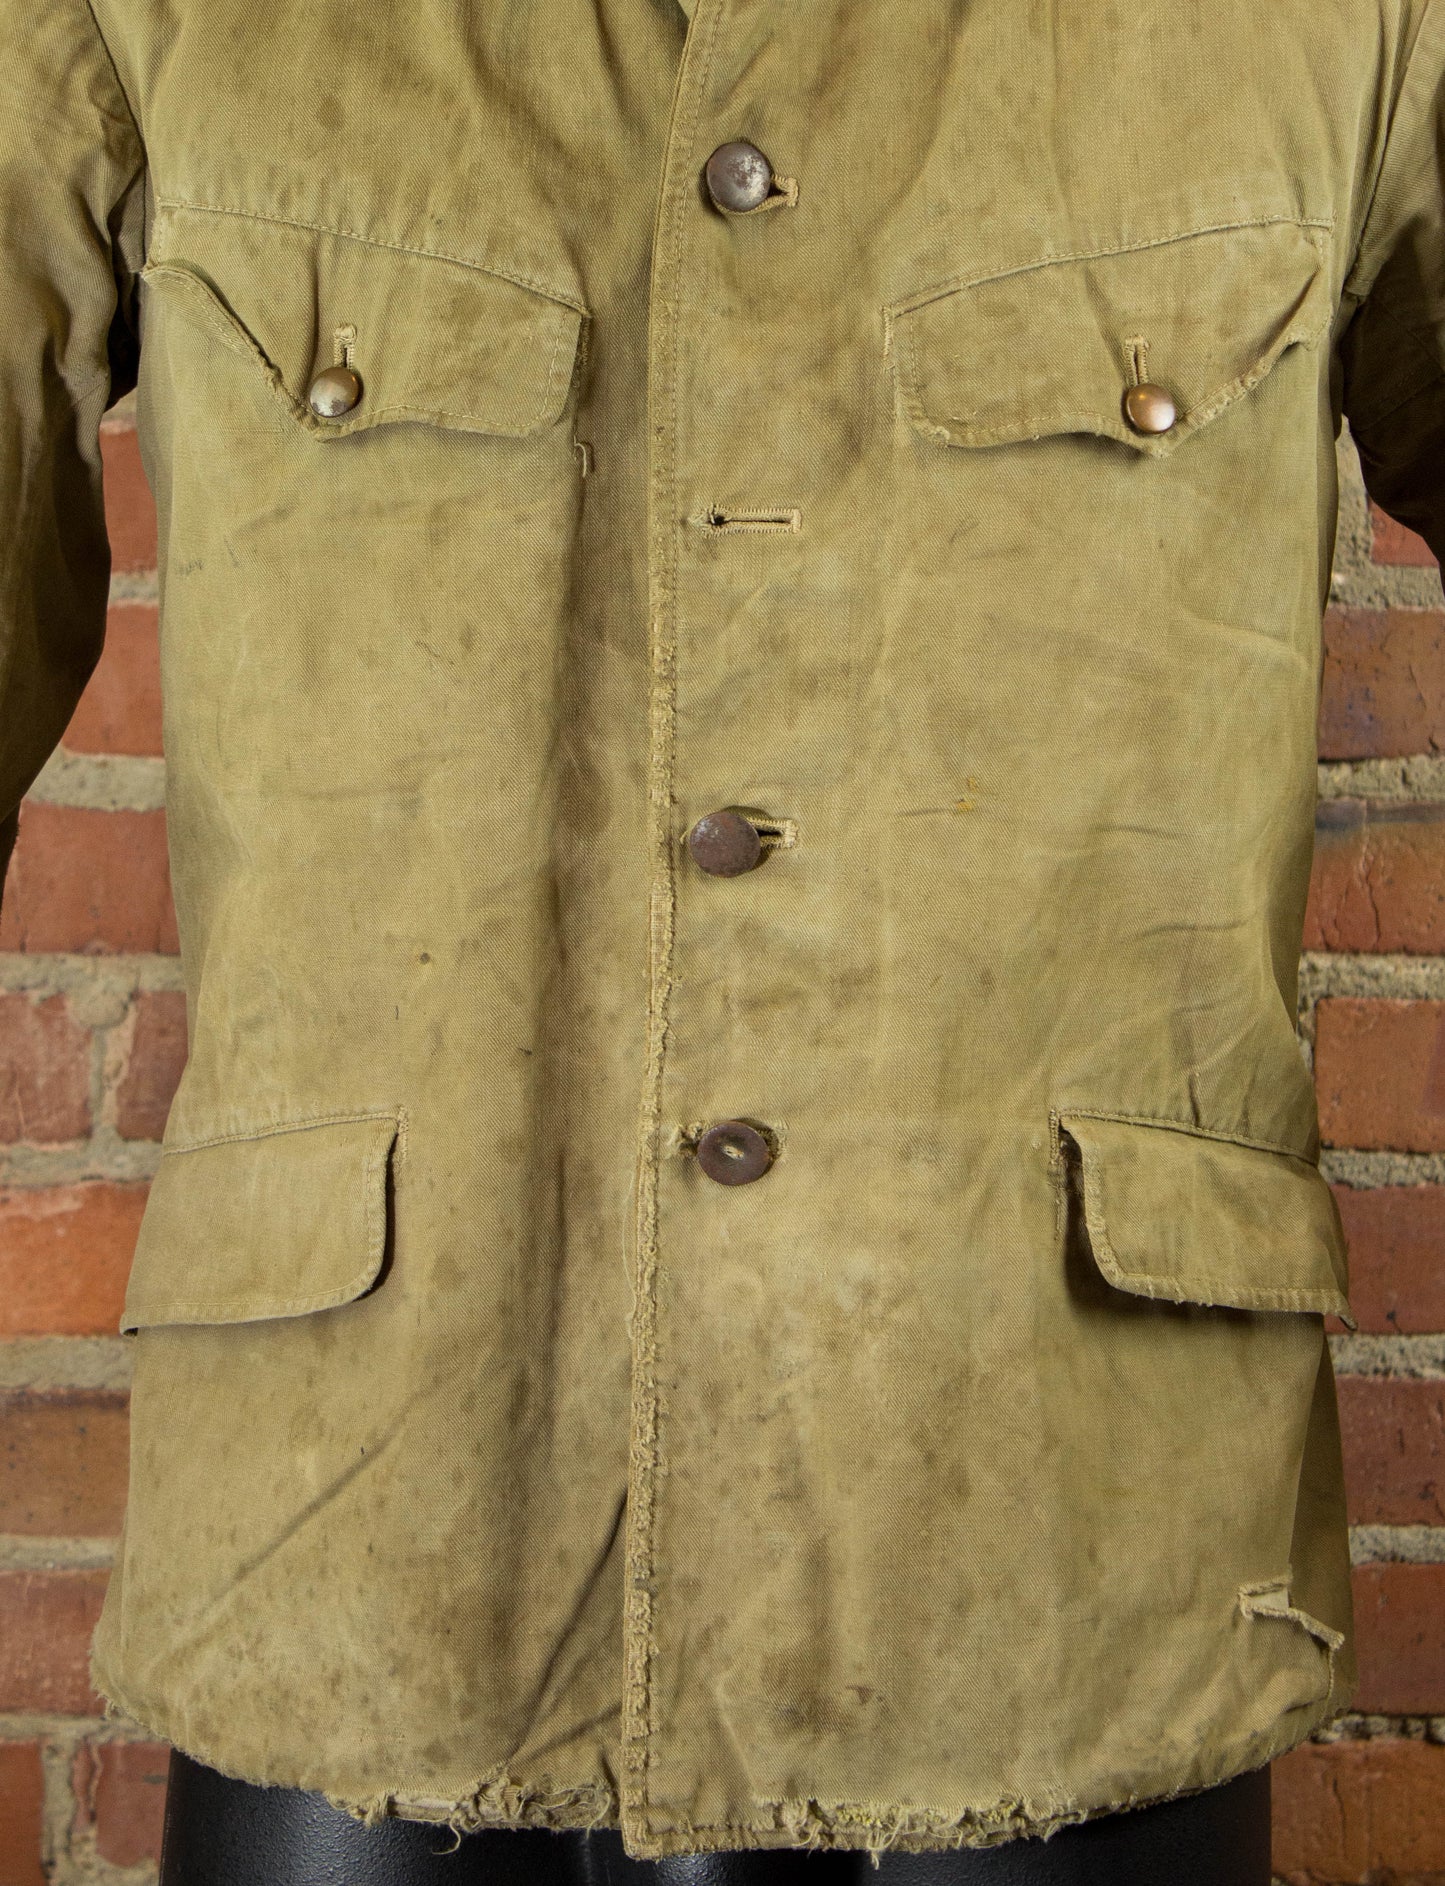 Vintage Japanese Workwear Jacket Unisex Small